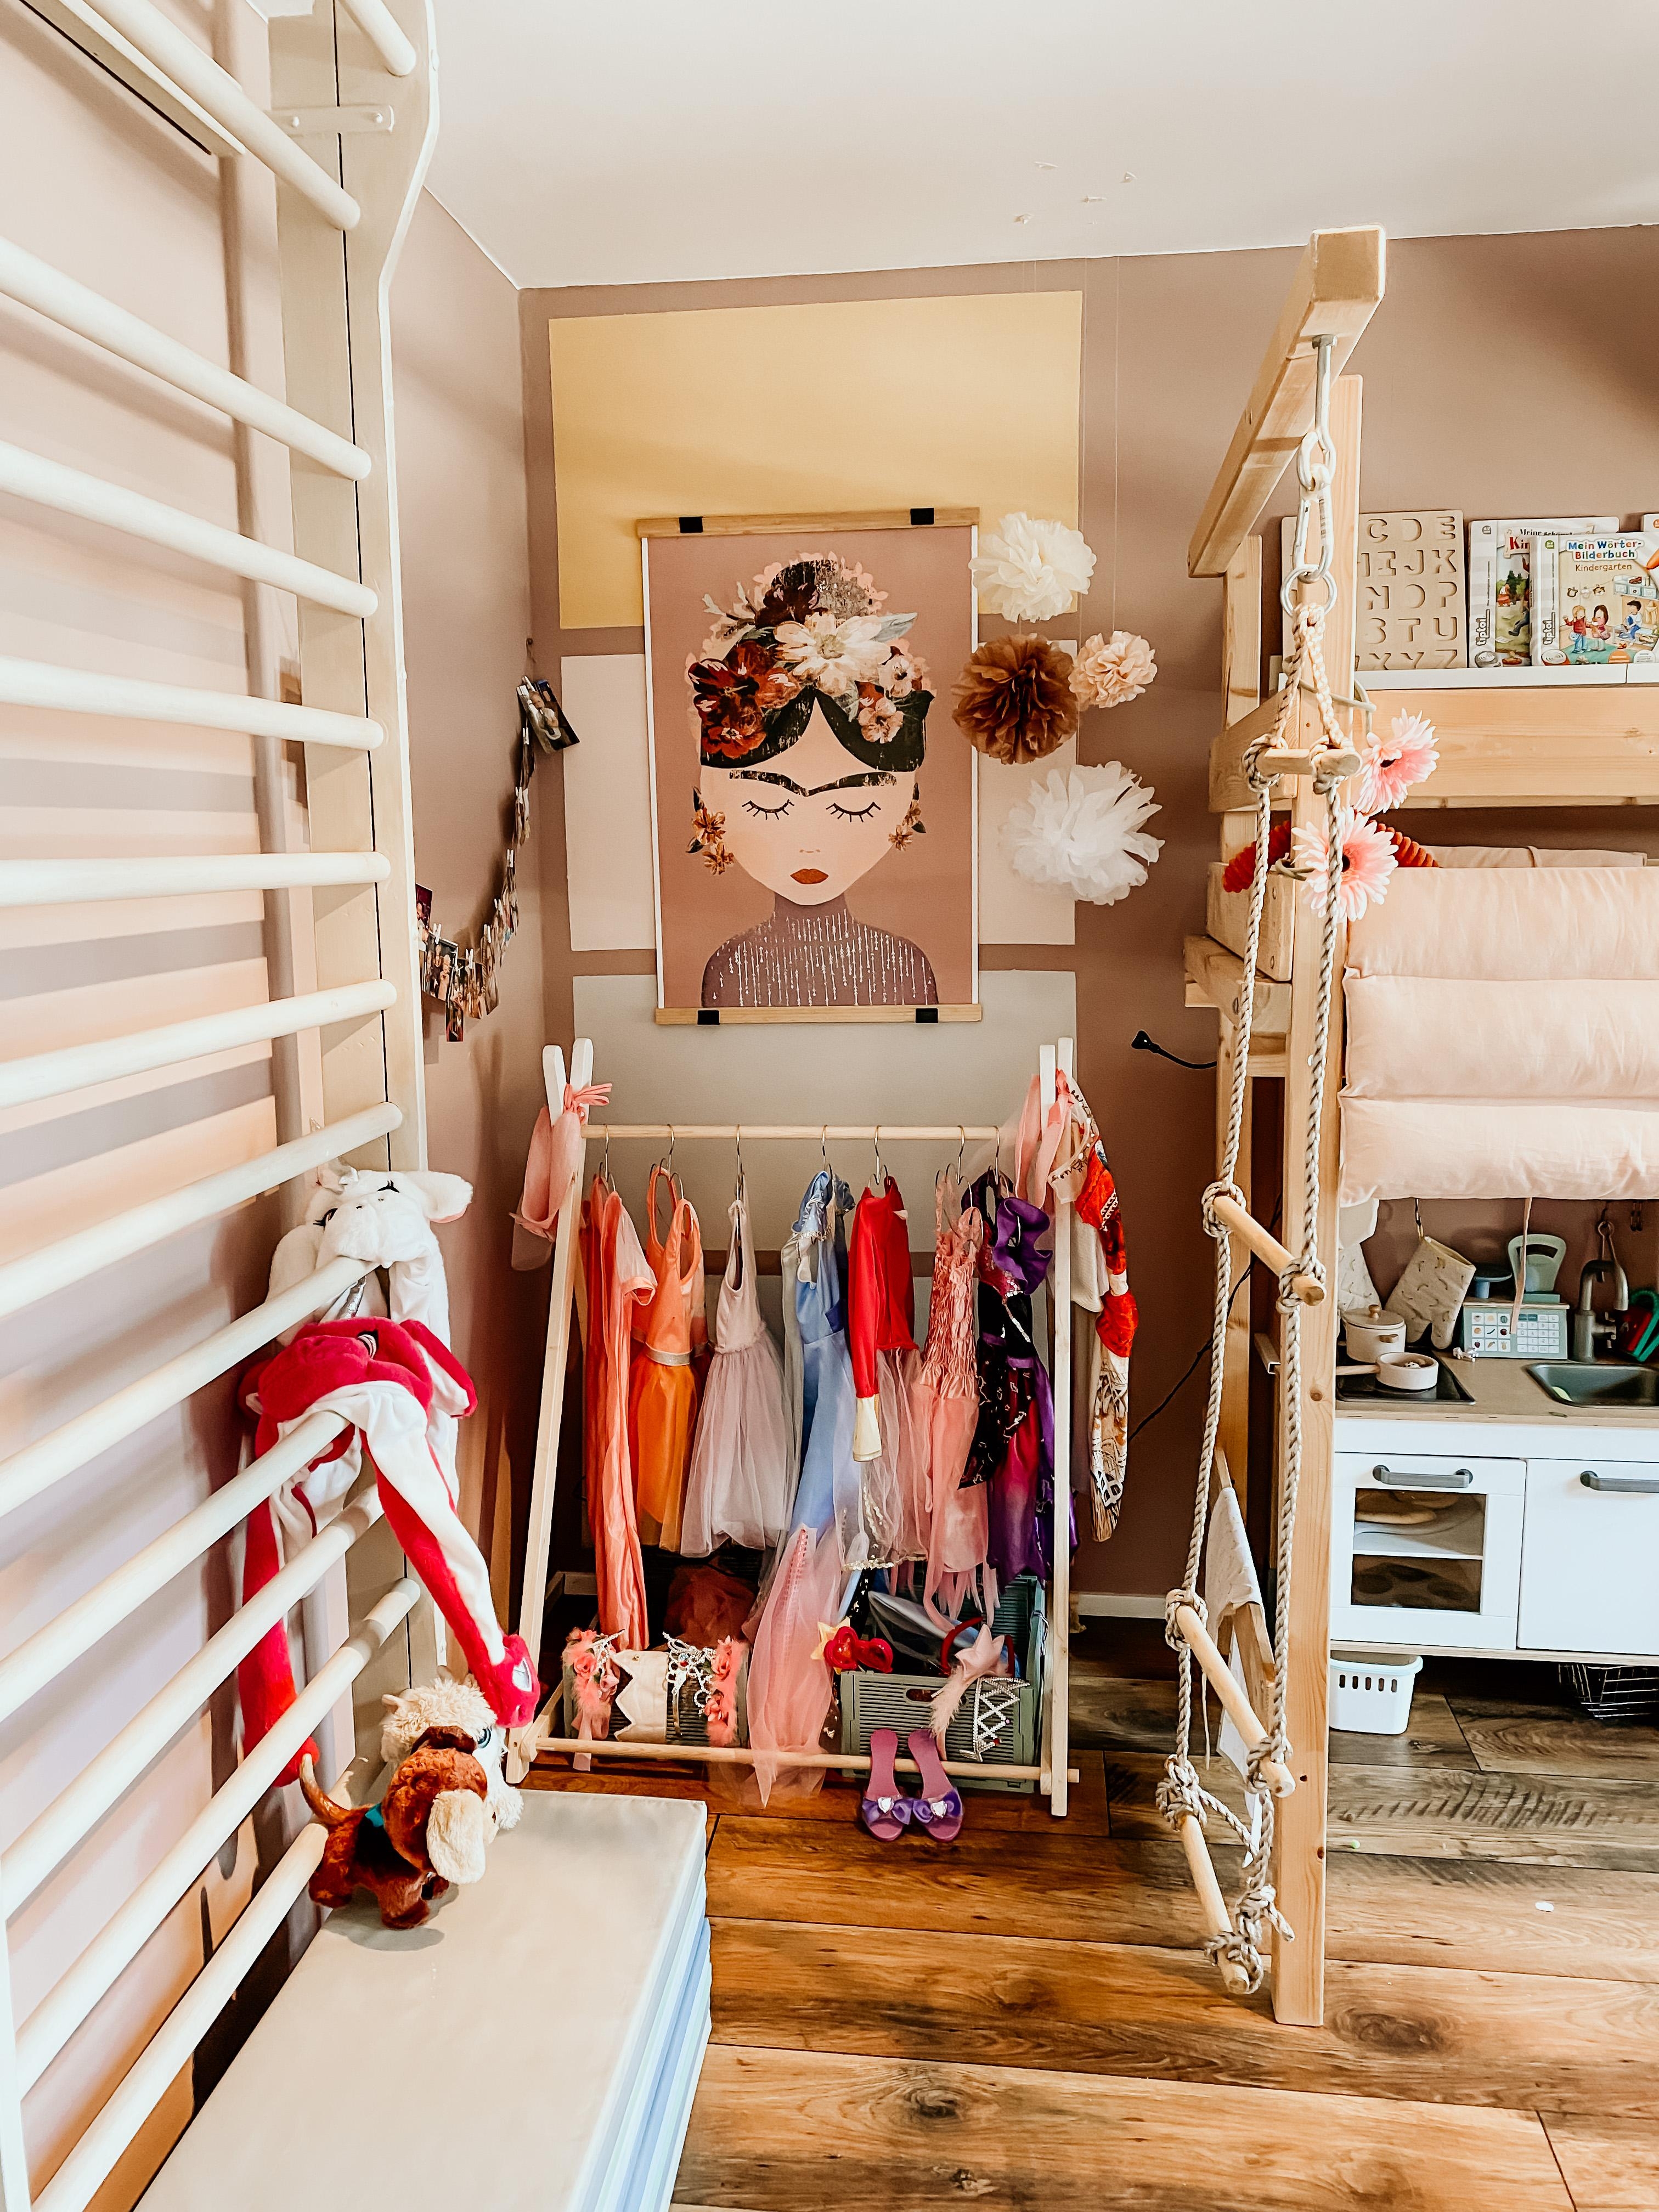 Frida ist in unsere Verkleidungsecke eingezogen! #spielzimmer #bunt #Juniqueposter #verkleidungsecke #sprossenwand 